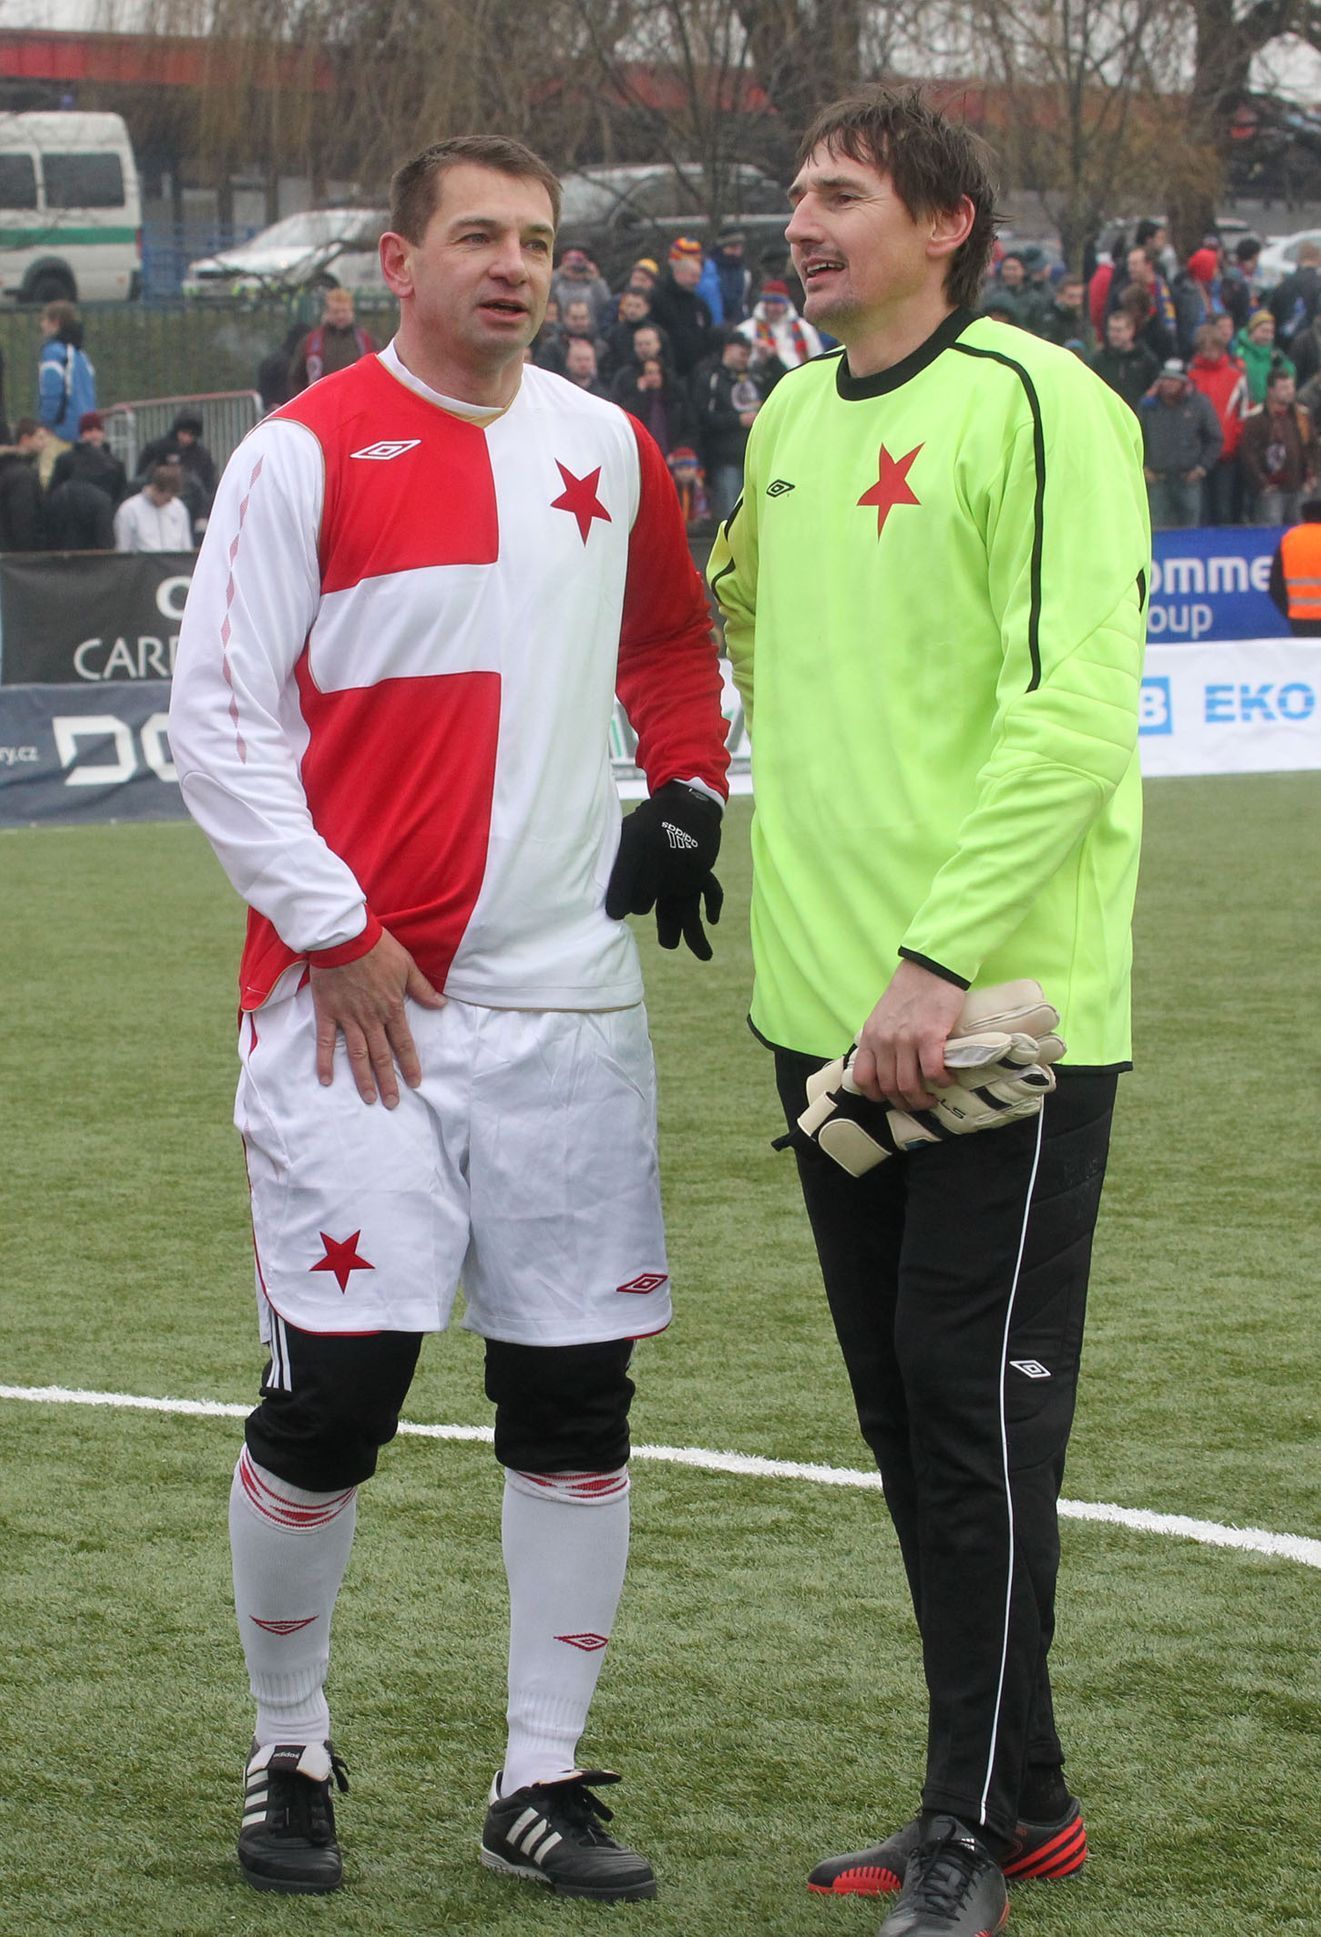 Silvestrovské derby Slavia - Sparta 2013